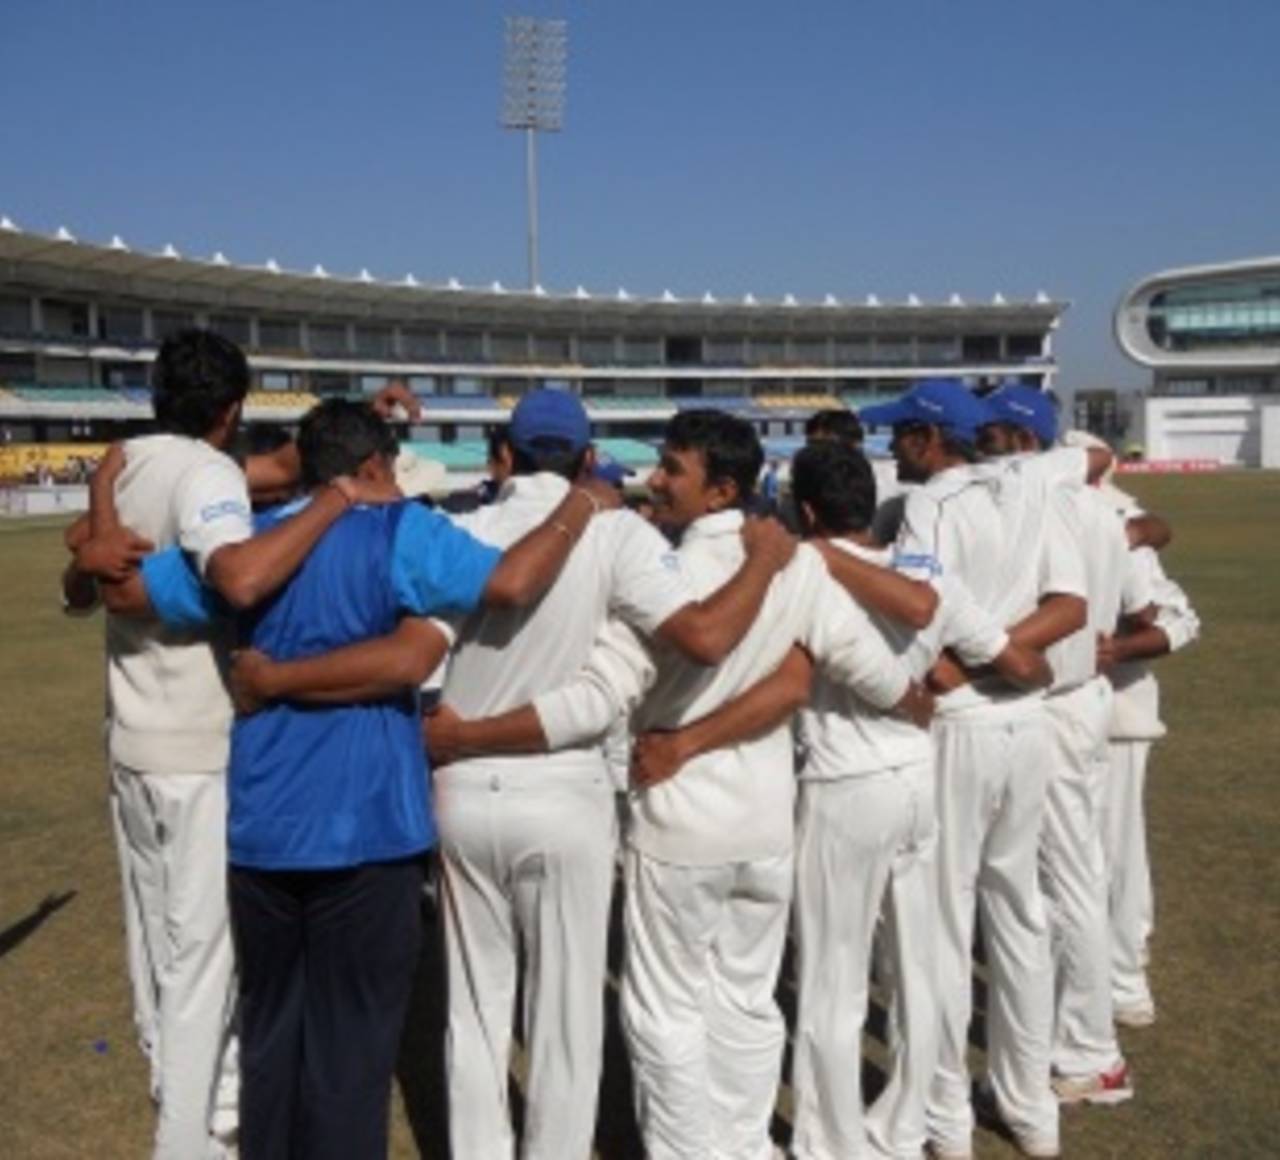 Saurashtra's players get into a huddle after winning the semi-final&nbsp;&nbsp;&bull;&nbsp;&nbsp;ESPNcricinfo Ltd